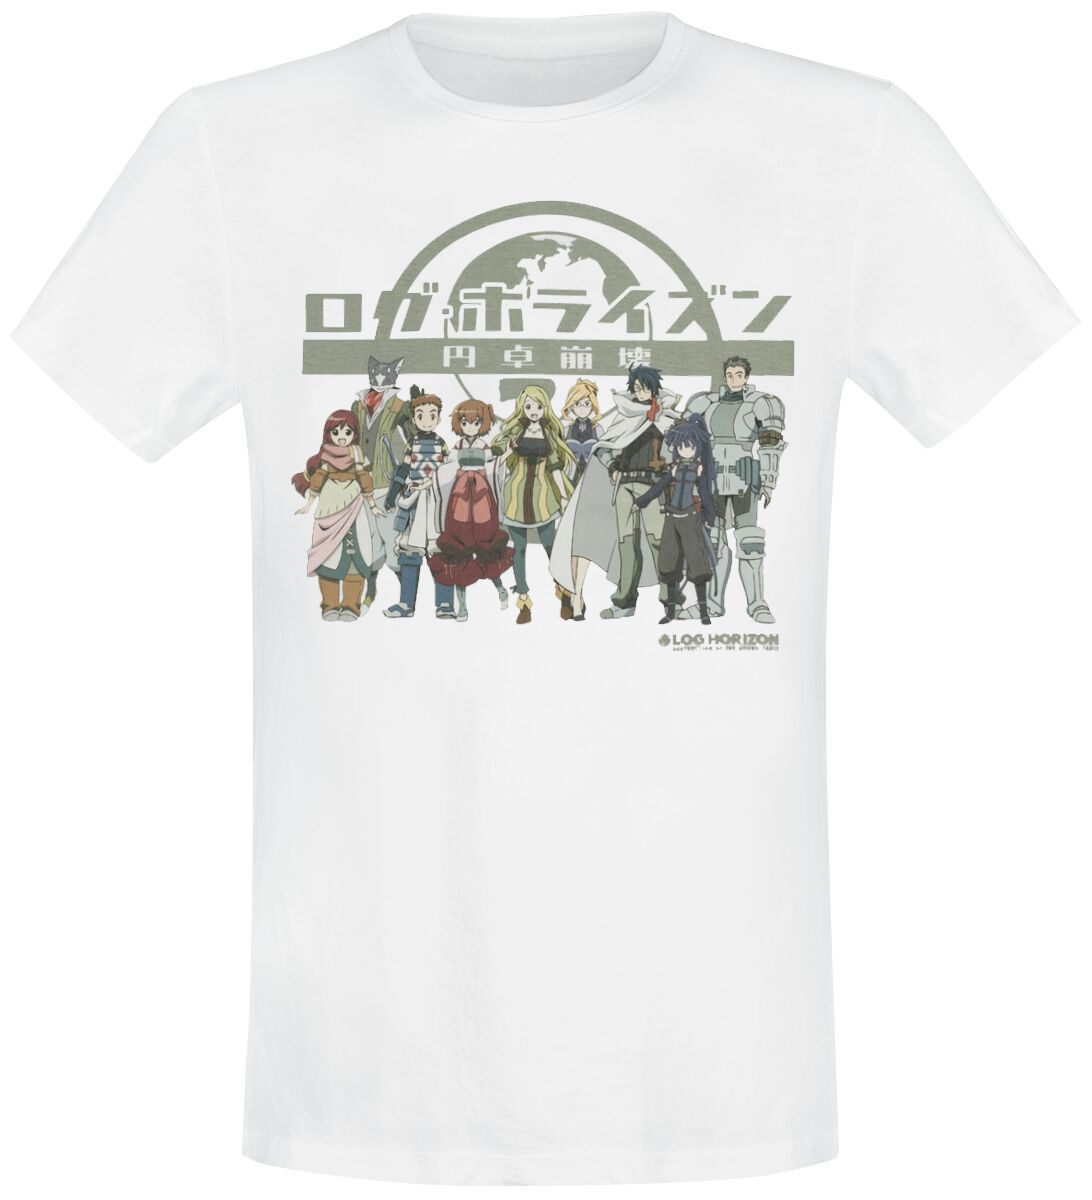 Log Horizon - Anime T-Shirt - Group - S bis L - für Männer - Größe S - weiß  - Lizenzierter Fanartikel